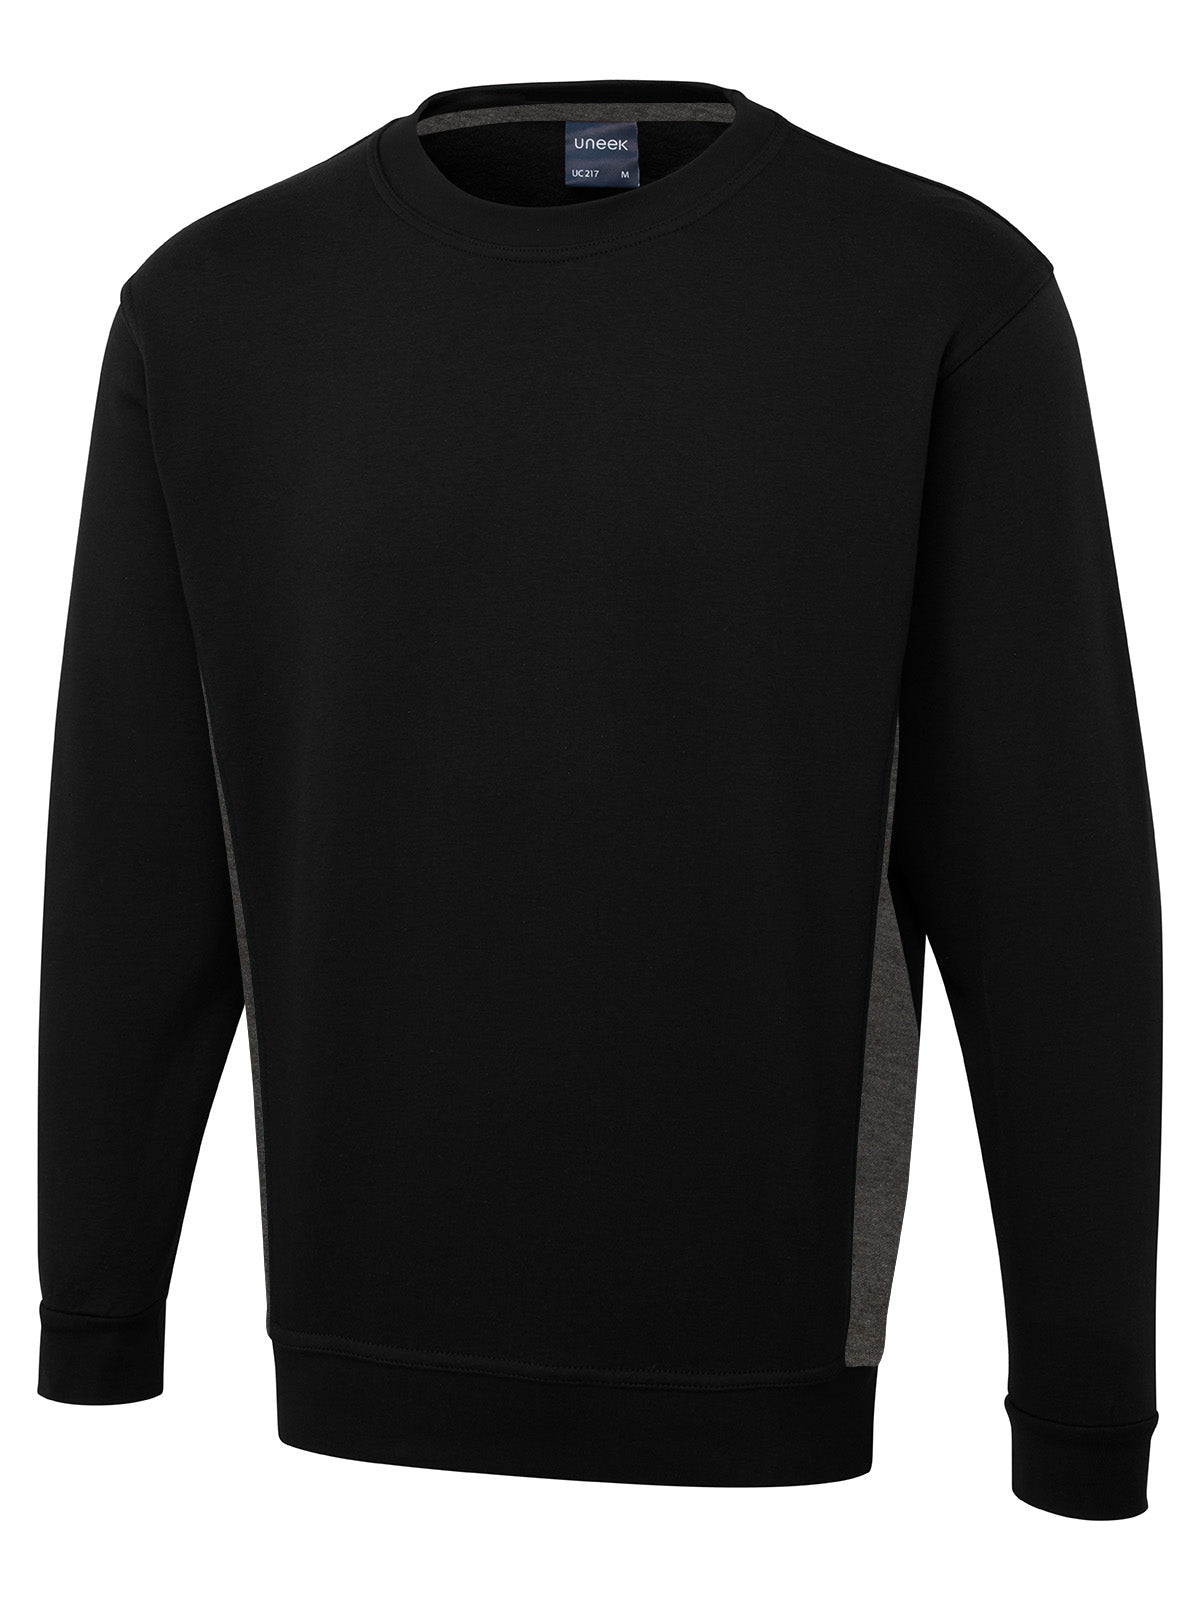 Uneek Two Tone Crew New Sweatshirt UC217 - Black/Charcoal